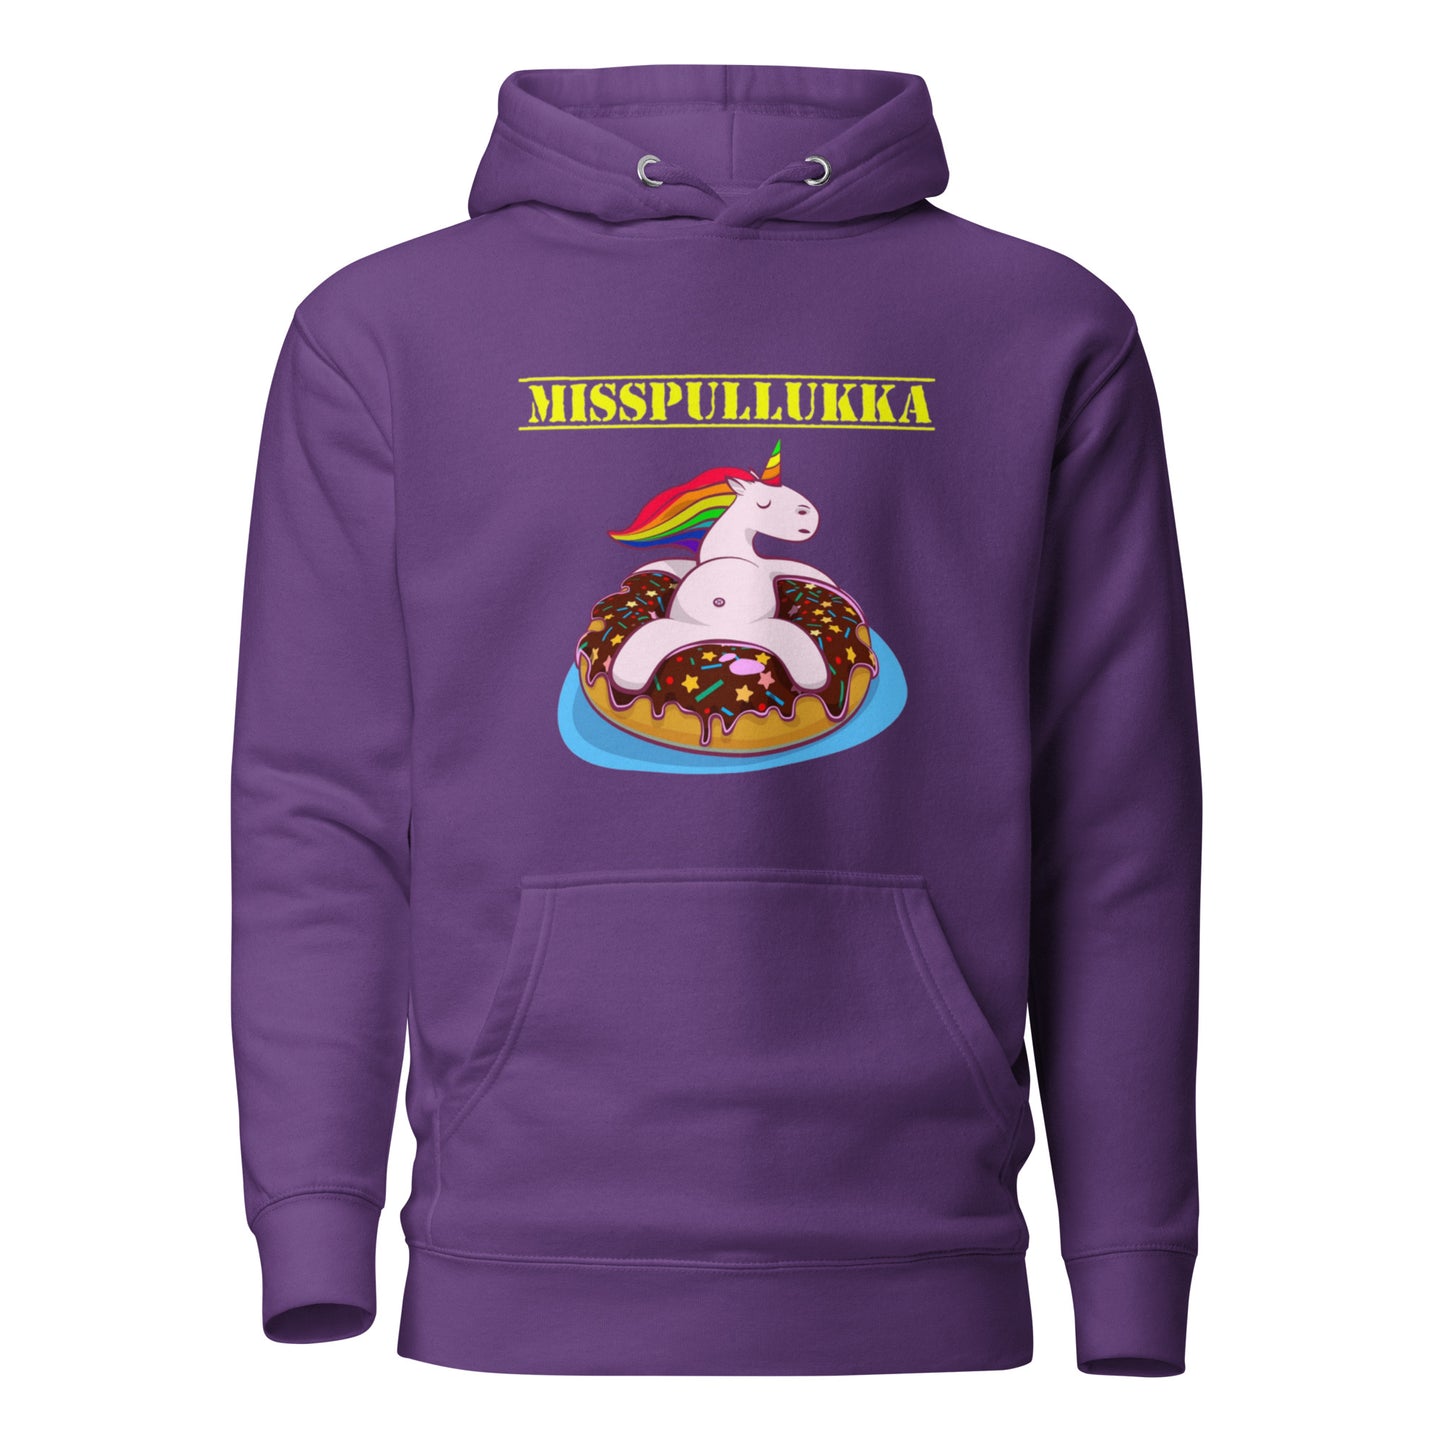 "MissPullukka" unisex hoodie